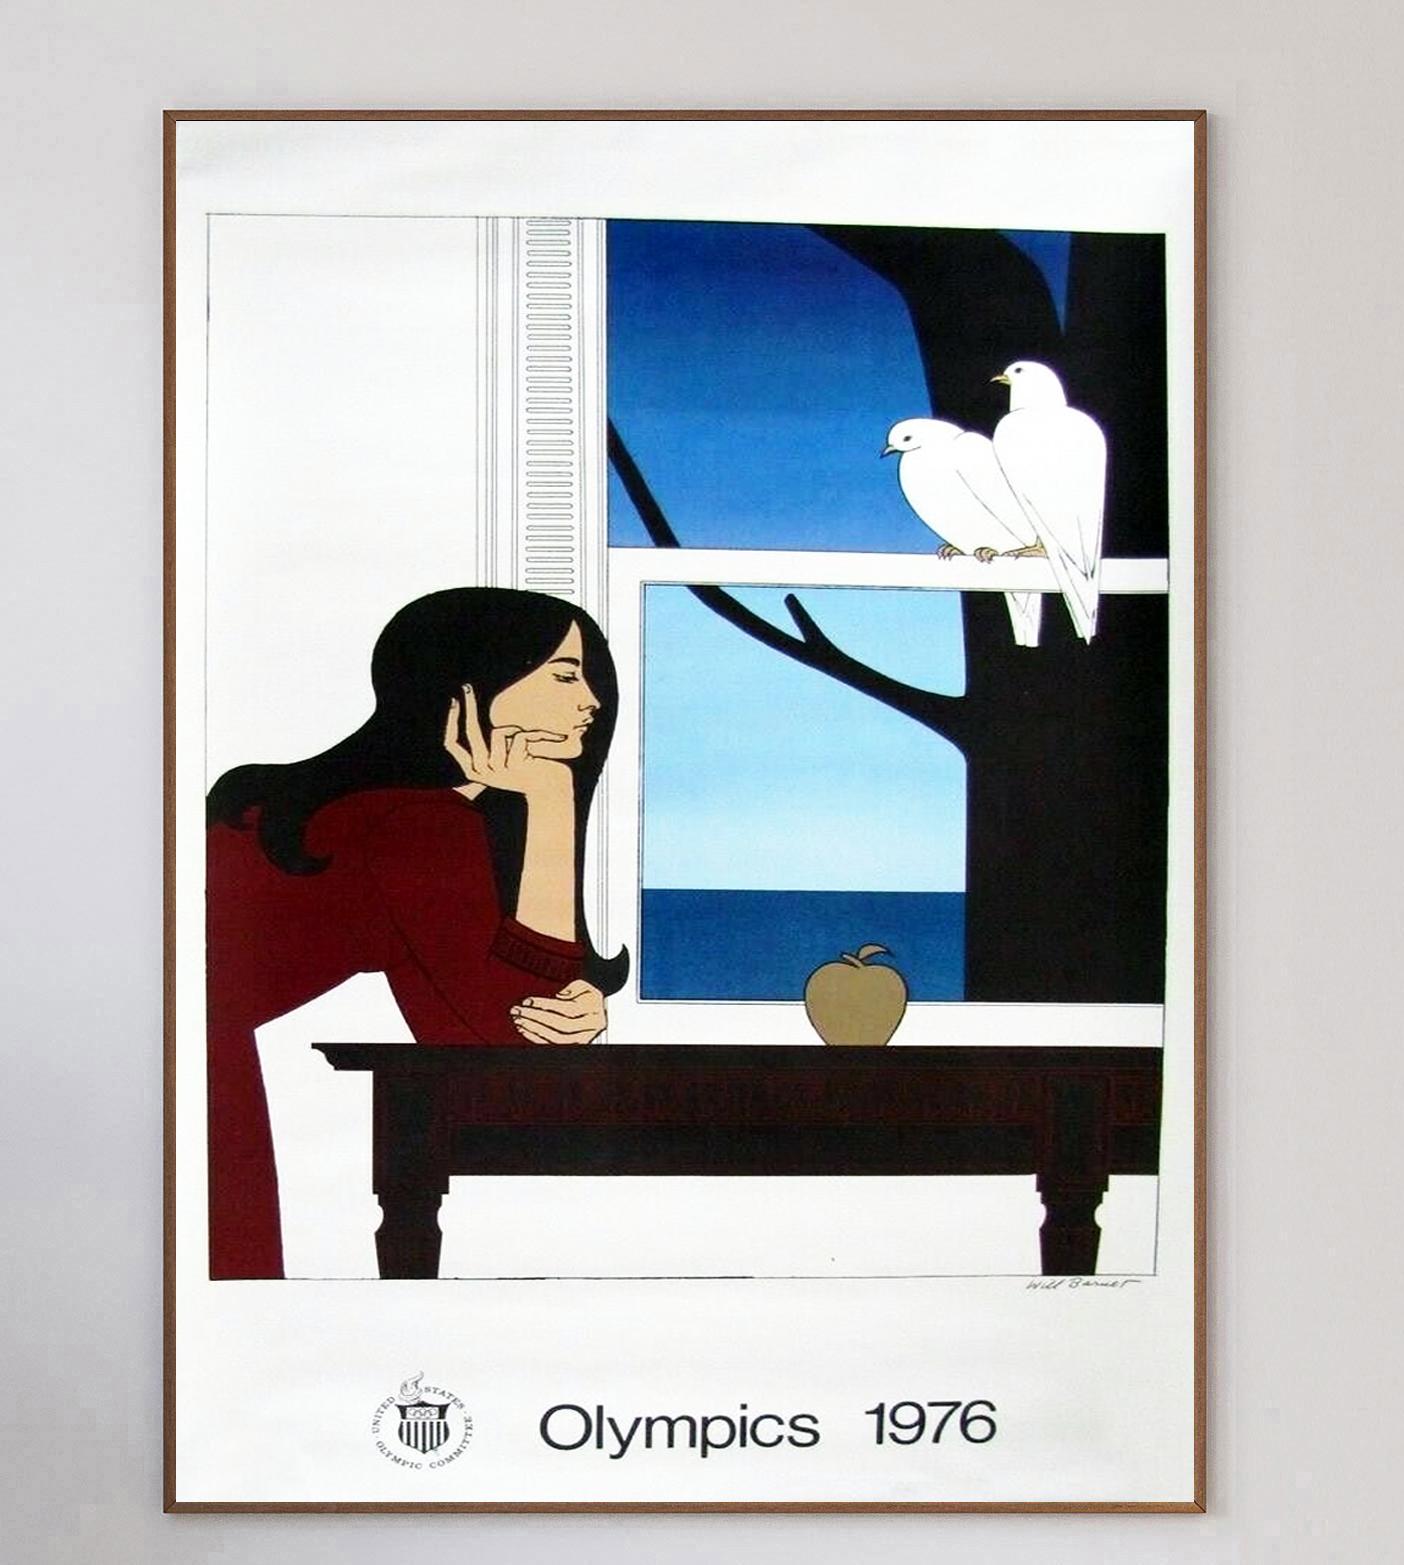 L'artiste américain Will Barnet a été l'un des nombreux artistes chargés de créer des affiches d'art pour la promotion des Jeux olympiques d'été de 1976 à Montréal. Ces jeux, les premiers et les seuls jeux d'été organisés au Canada, ont été